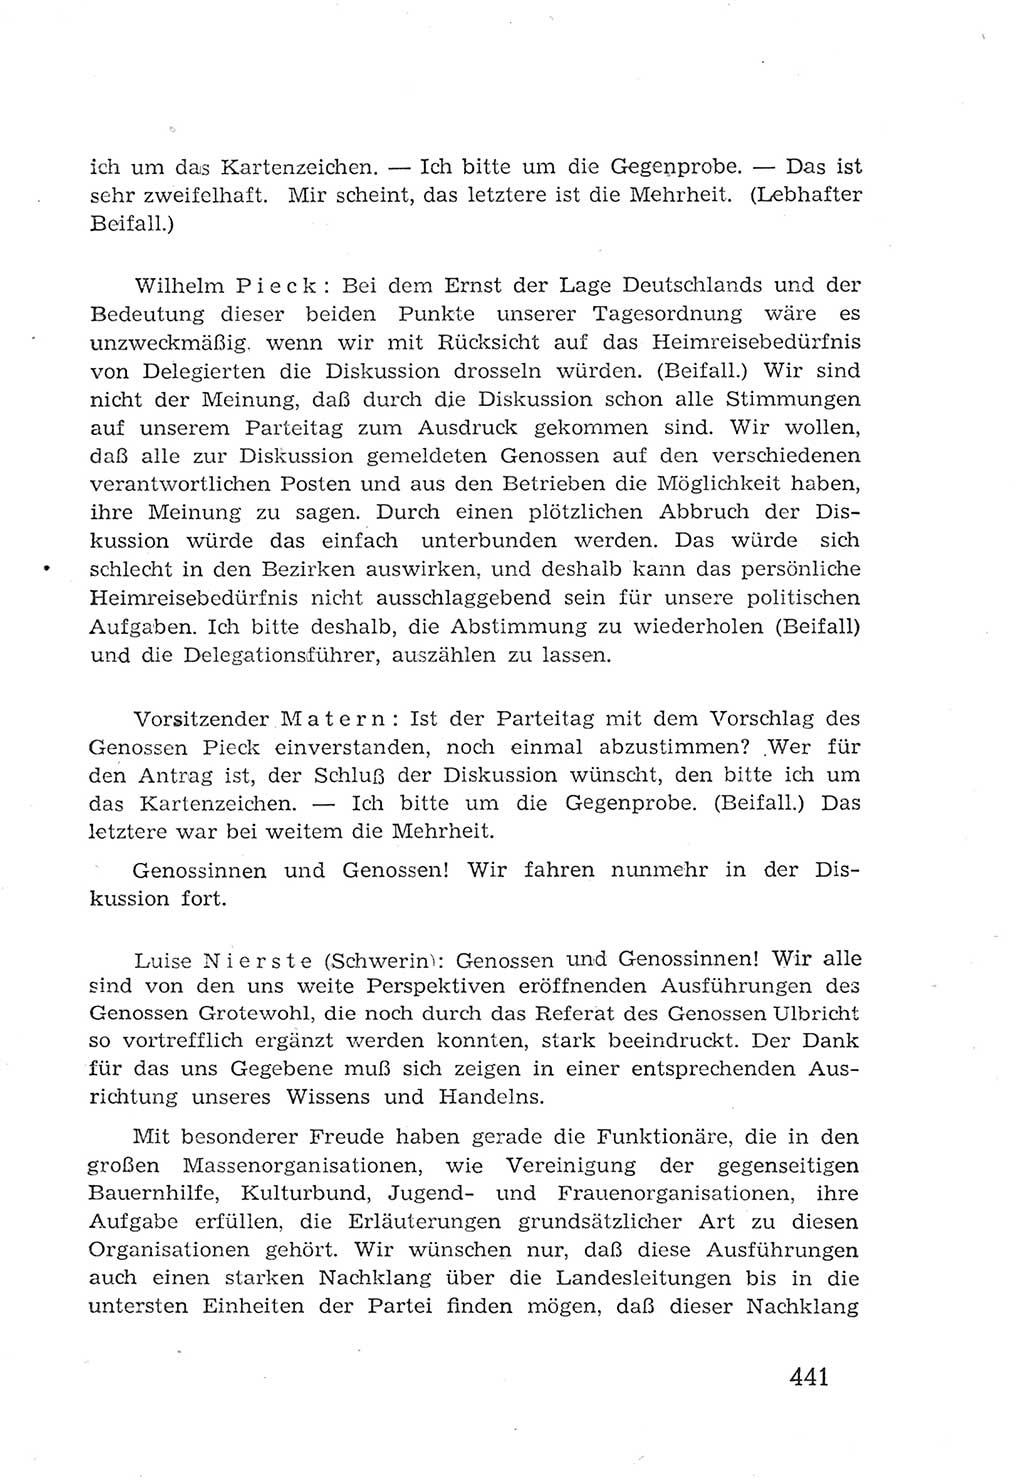 Protokoll der Verhandlungen des 2. Parteitages der Sozialistischen Einheitspartei Deutschlands (SED) [Sowjetische Besatzungszone (SBZ) Deutschlands] 1947, Seite 441 (Prot. Verh. 2. PT SED SBZ Dtl. 1947, S. 441)